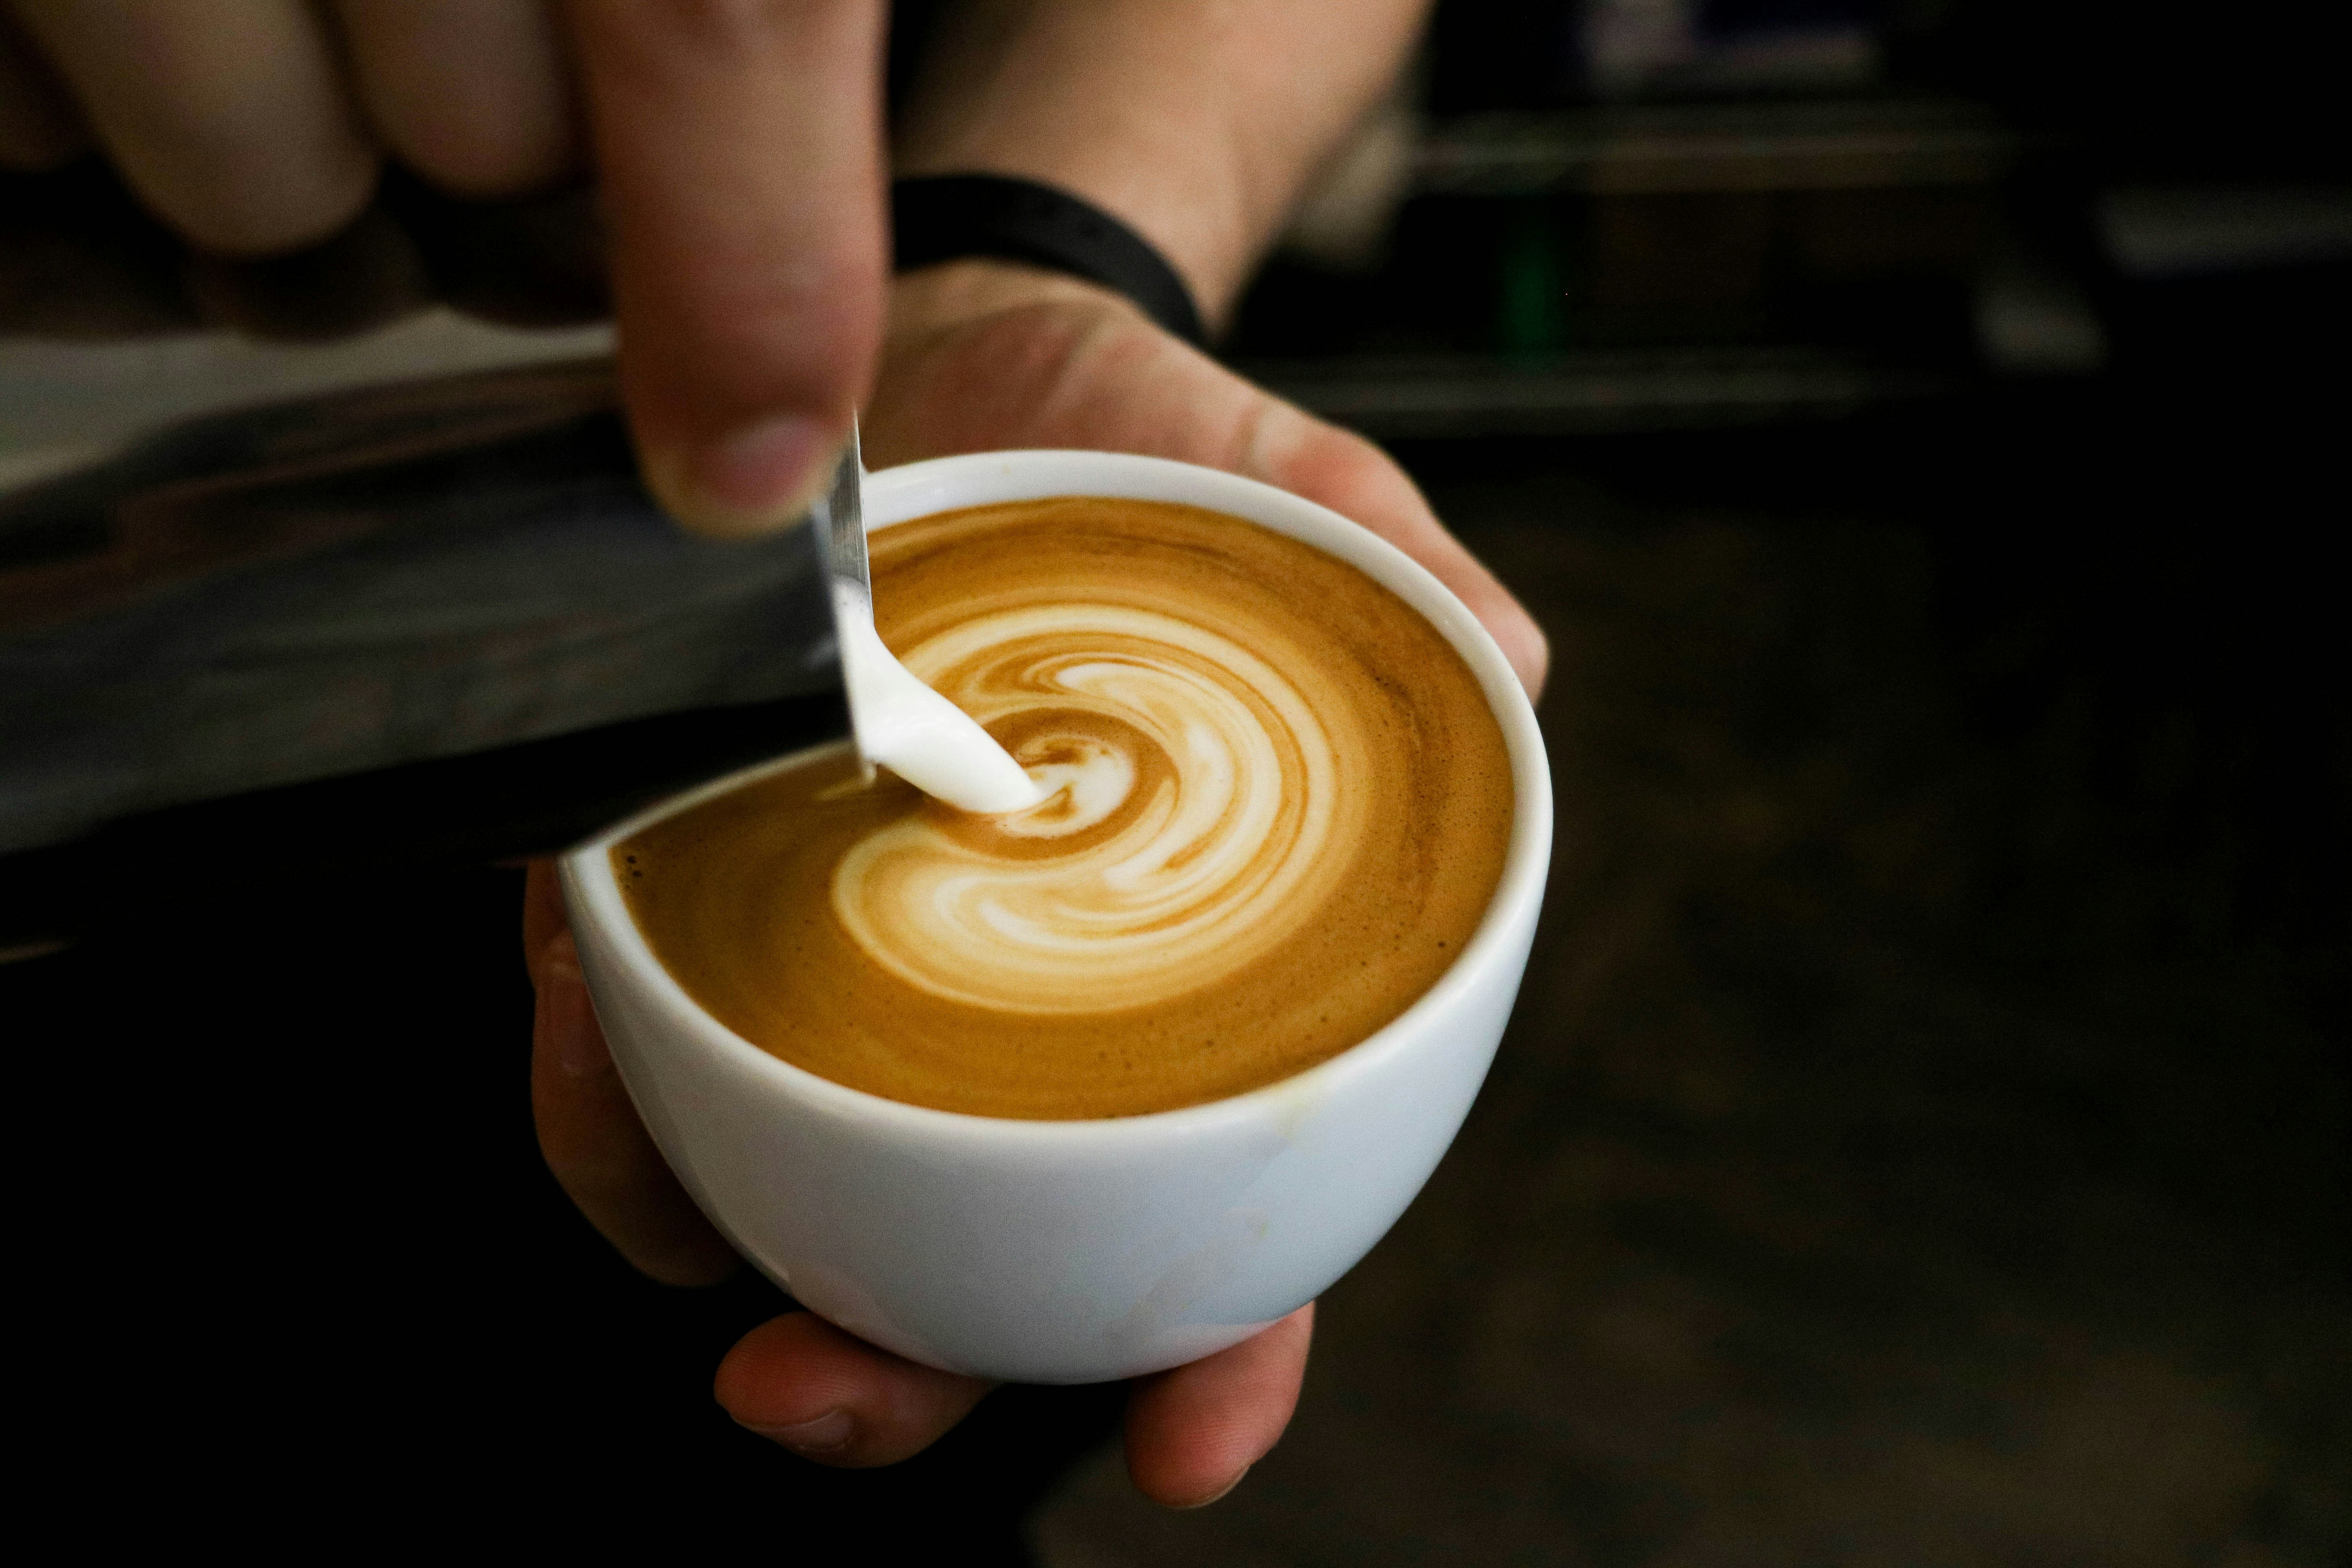 커피를 가득 채운 동그랗고 하얀 커피잔에 쇠로 된 주전자에 들어 있는 크림을 쏟아서 붓고 있는 사진